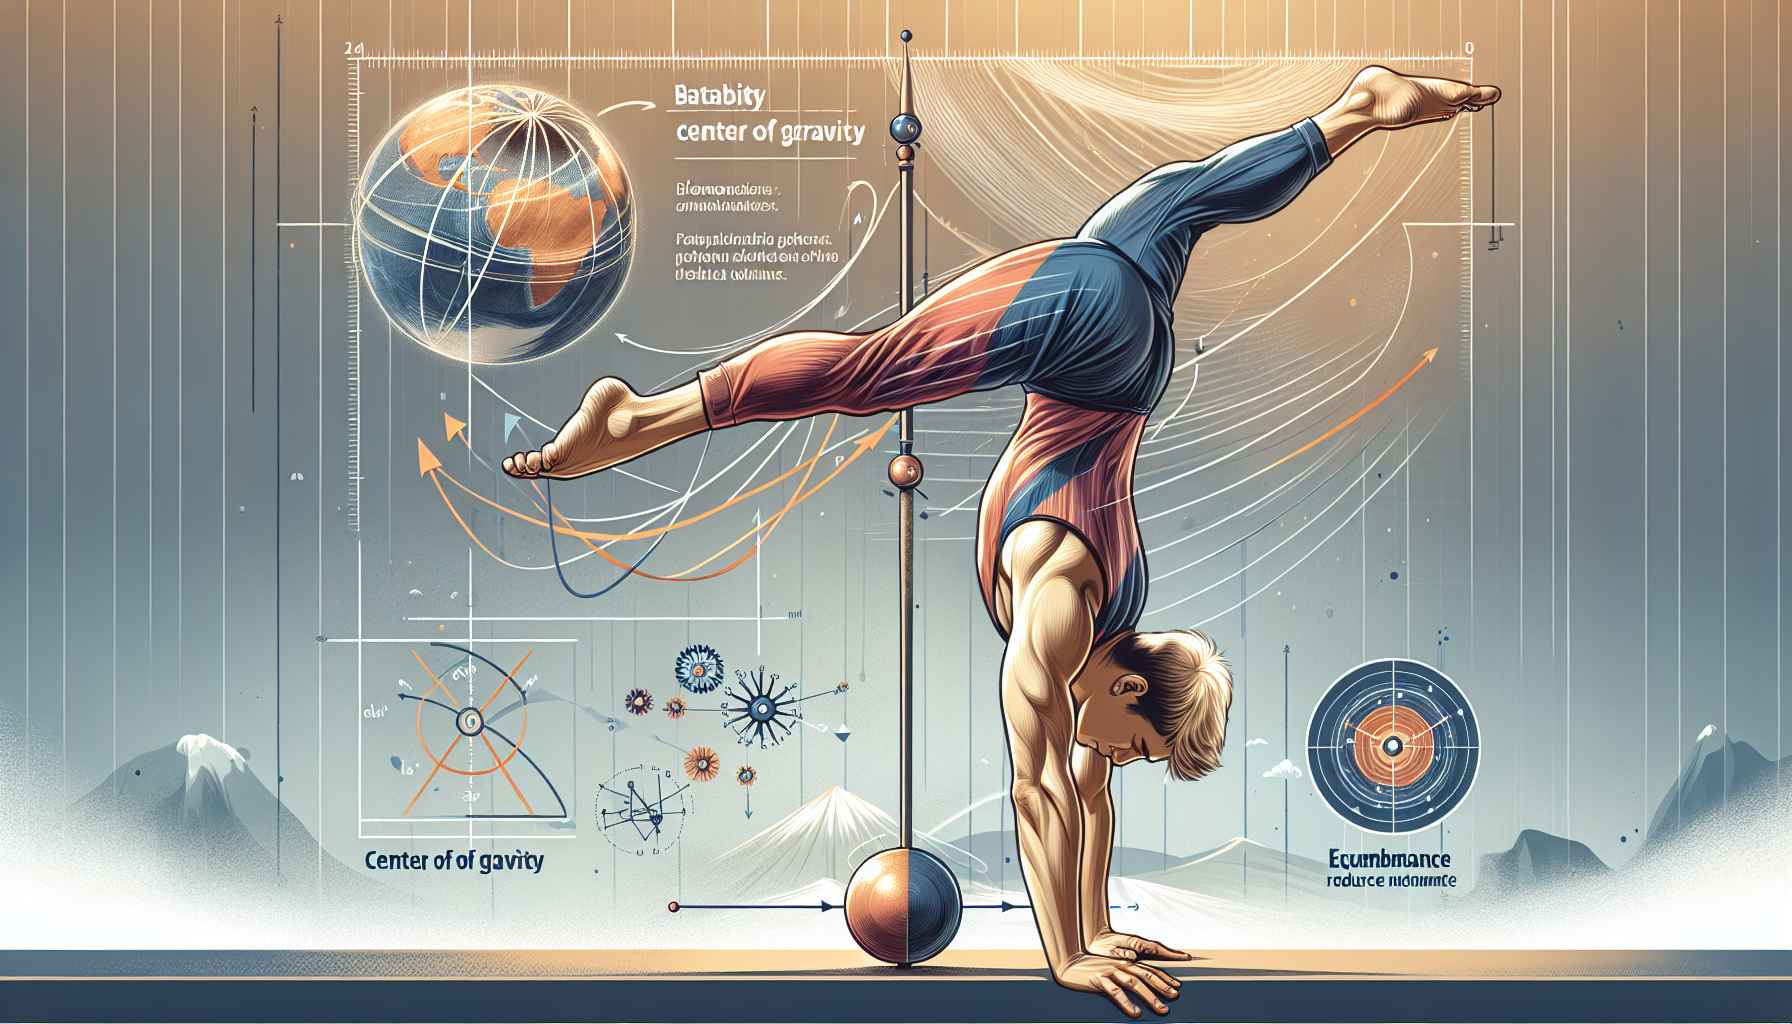 Como a Estabilidade e o Centro de Gravidade Influenciam o Equilíbrio e Biomecânica do Corpo